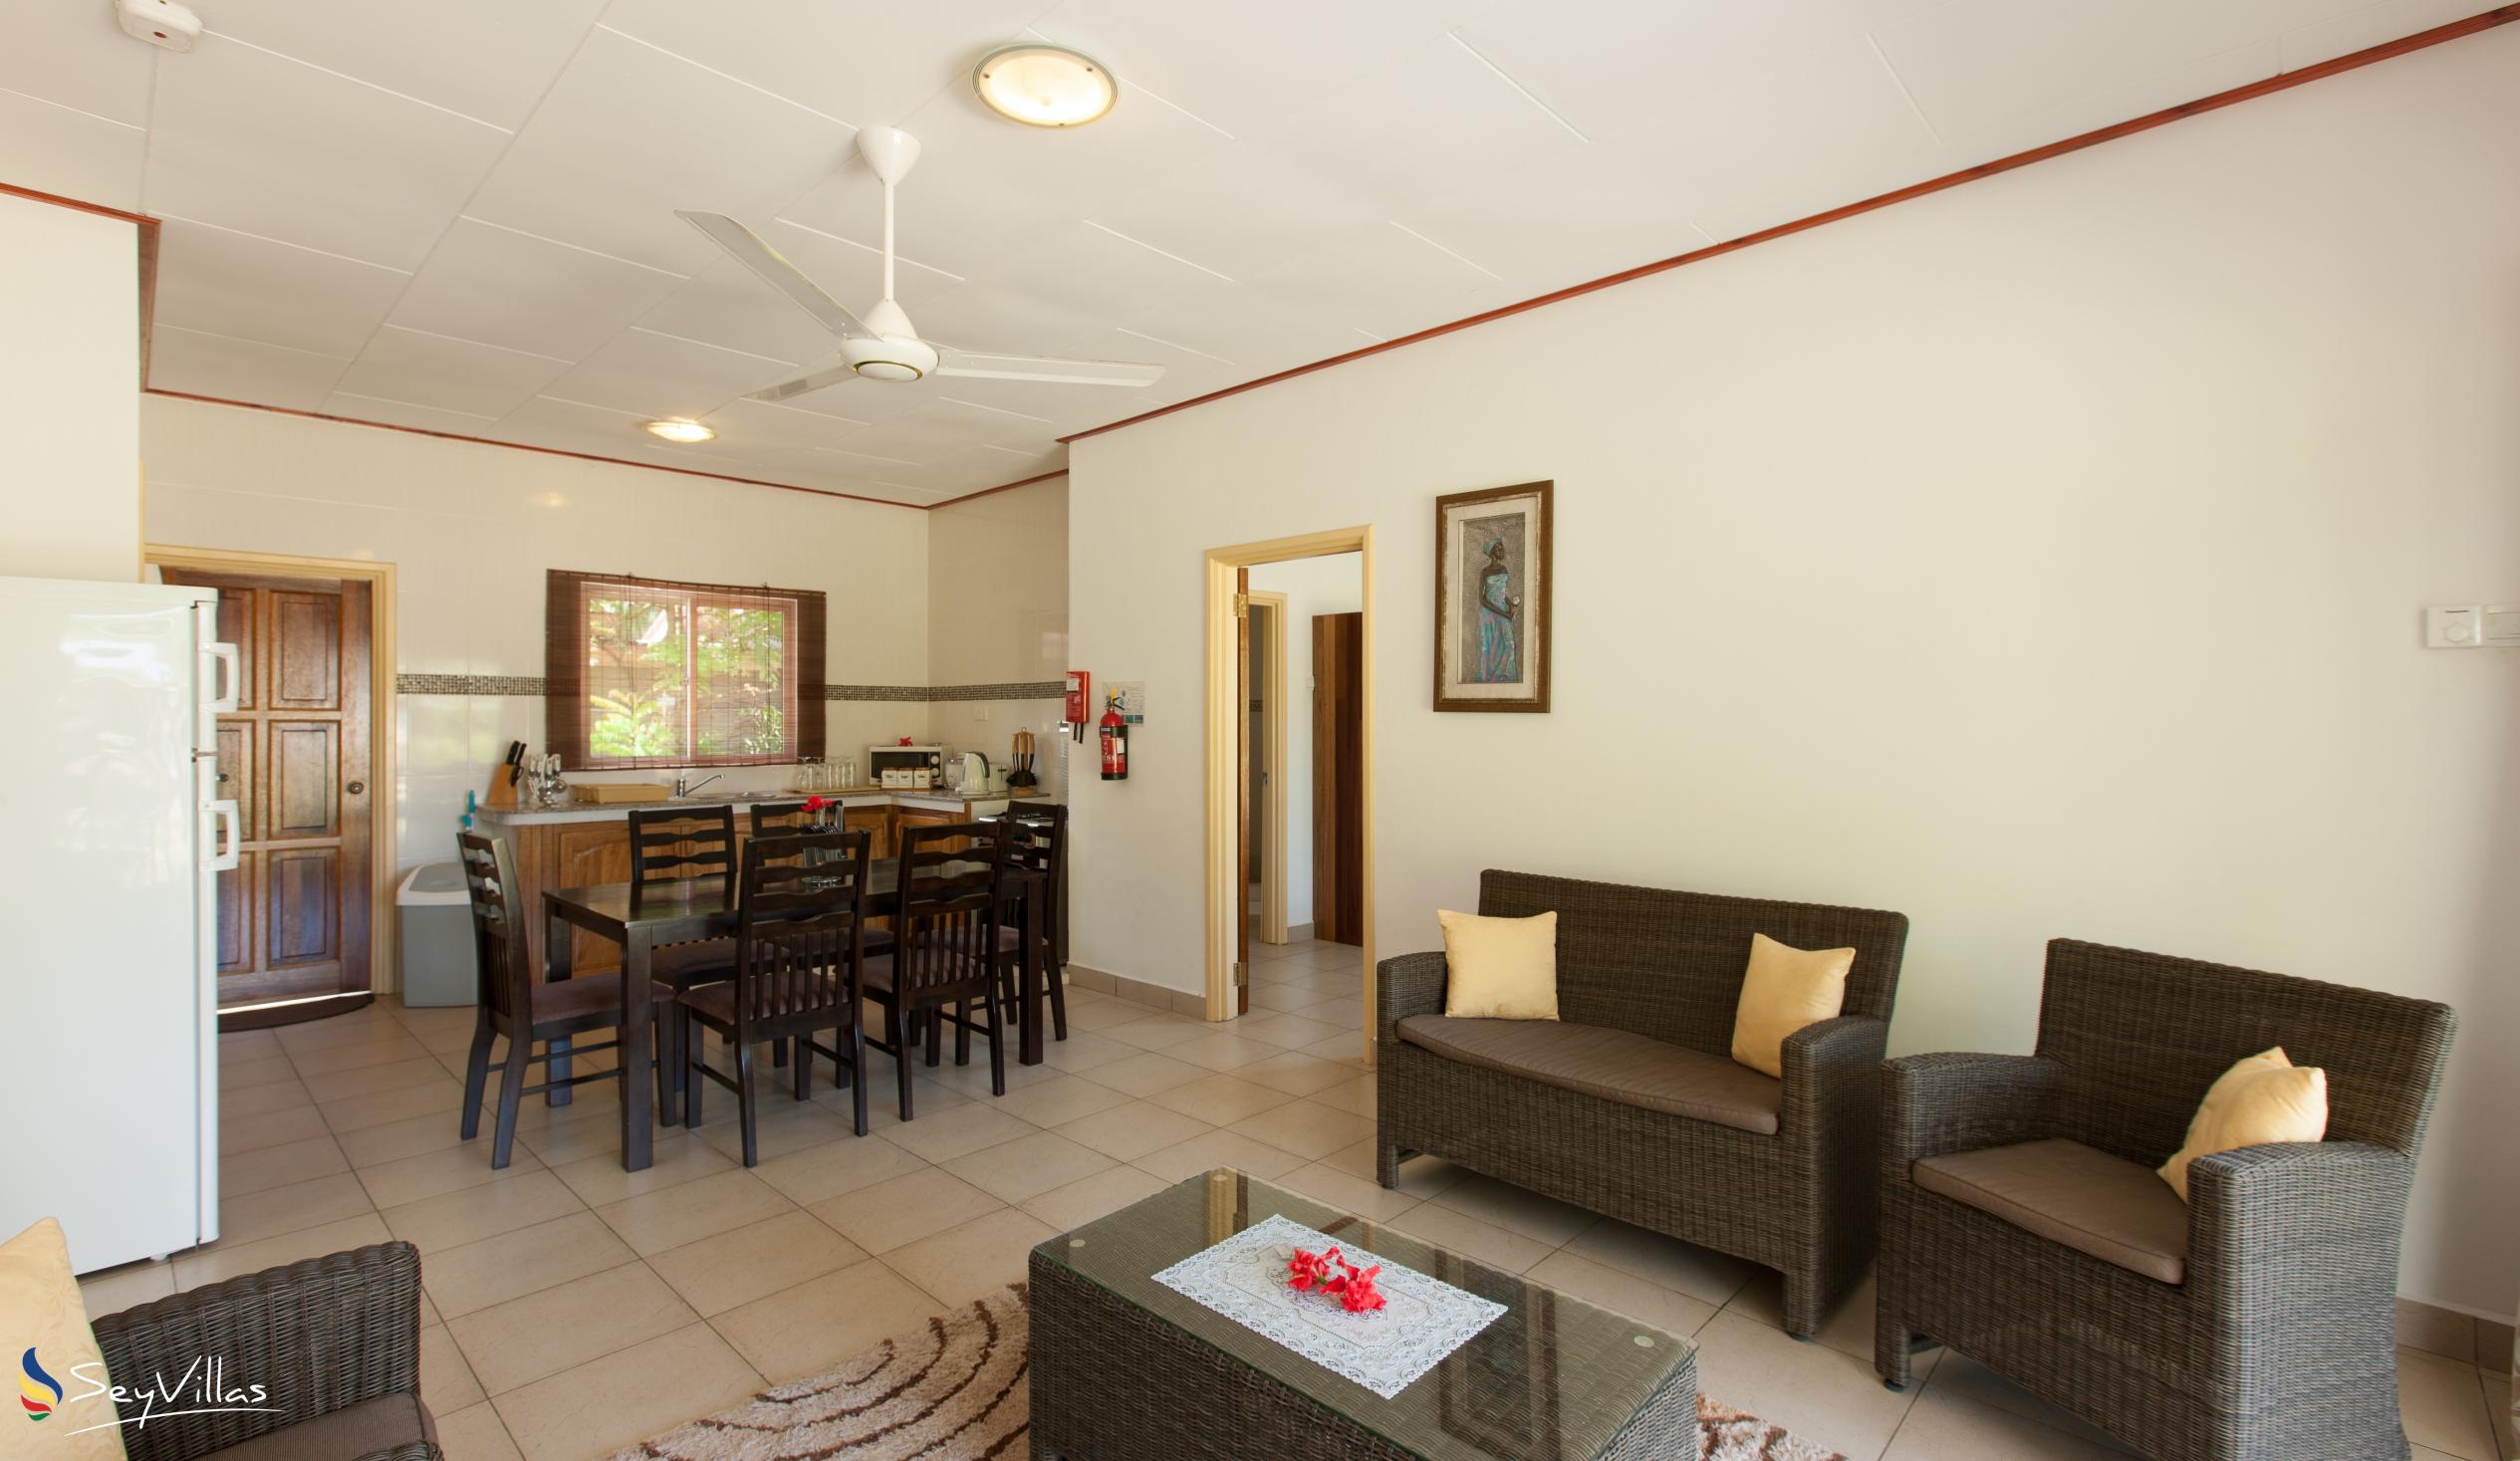 Foto 38: Hostellerie La Digue - Bungalow con 2 camere da letto - La Digue (Seychelles)